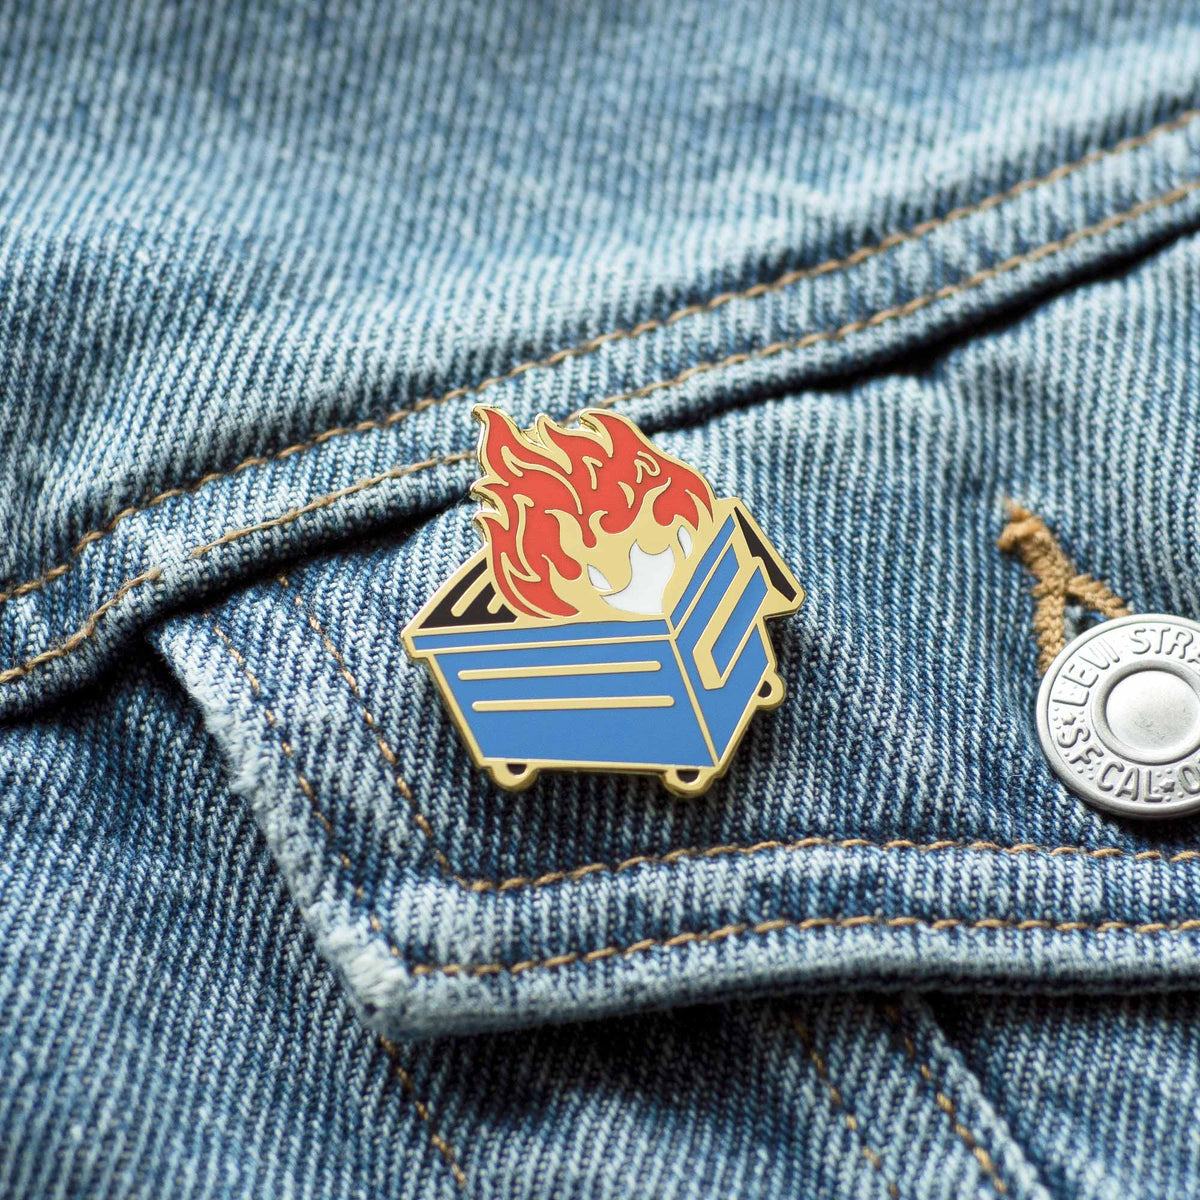 Blue Dumpster Fire hard enamel pin on denim jacket